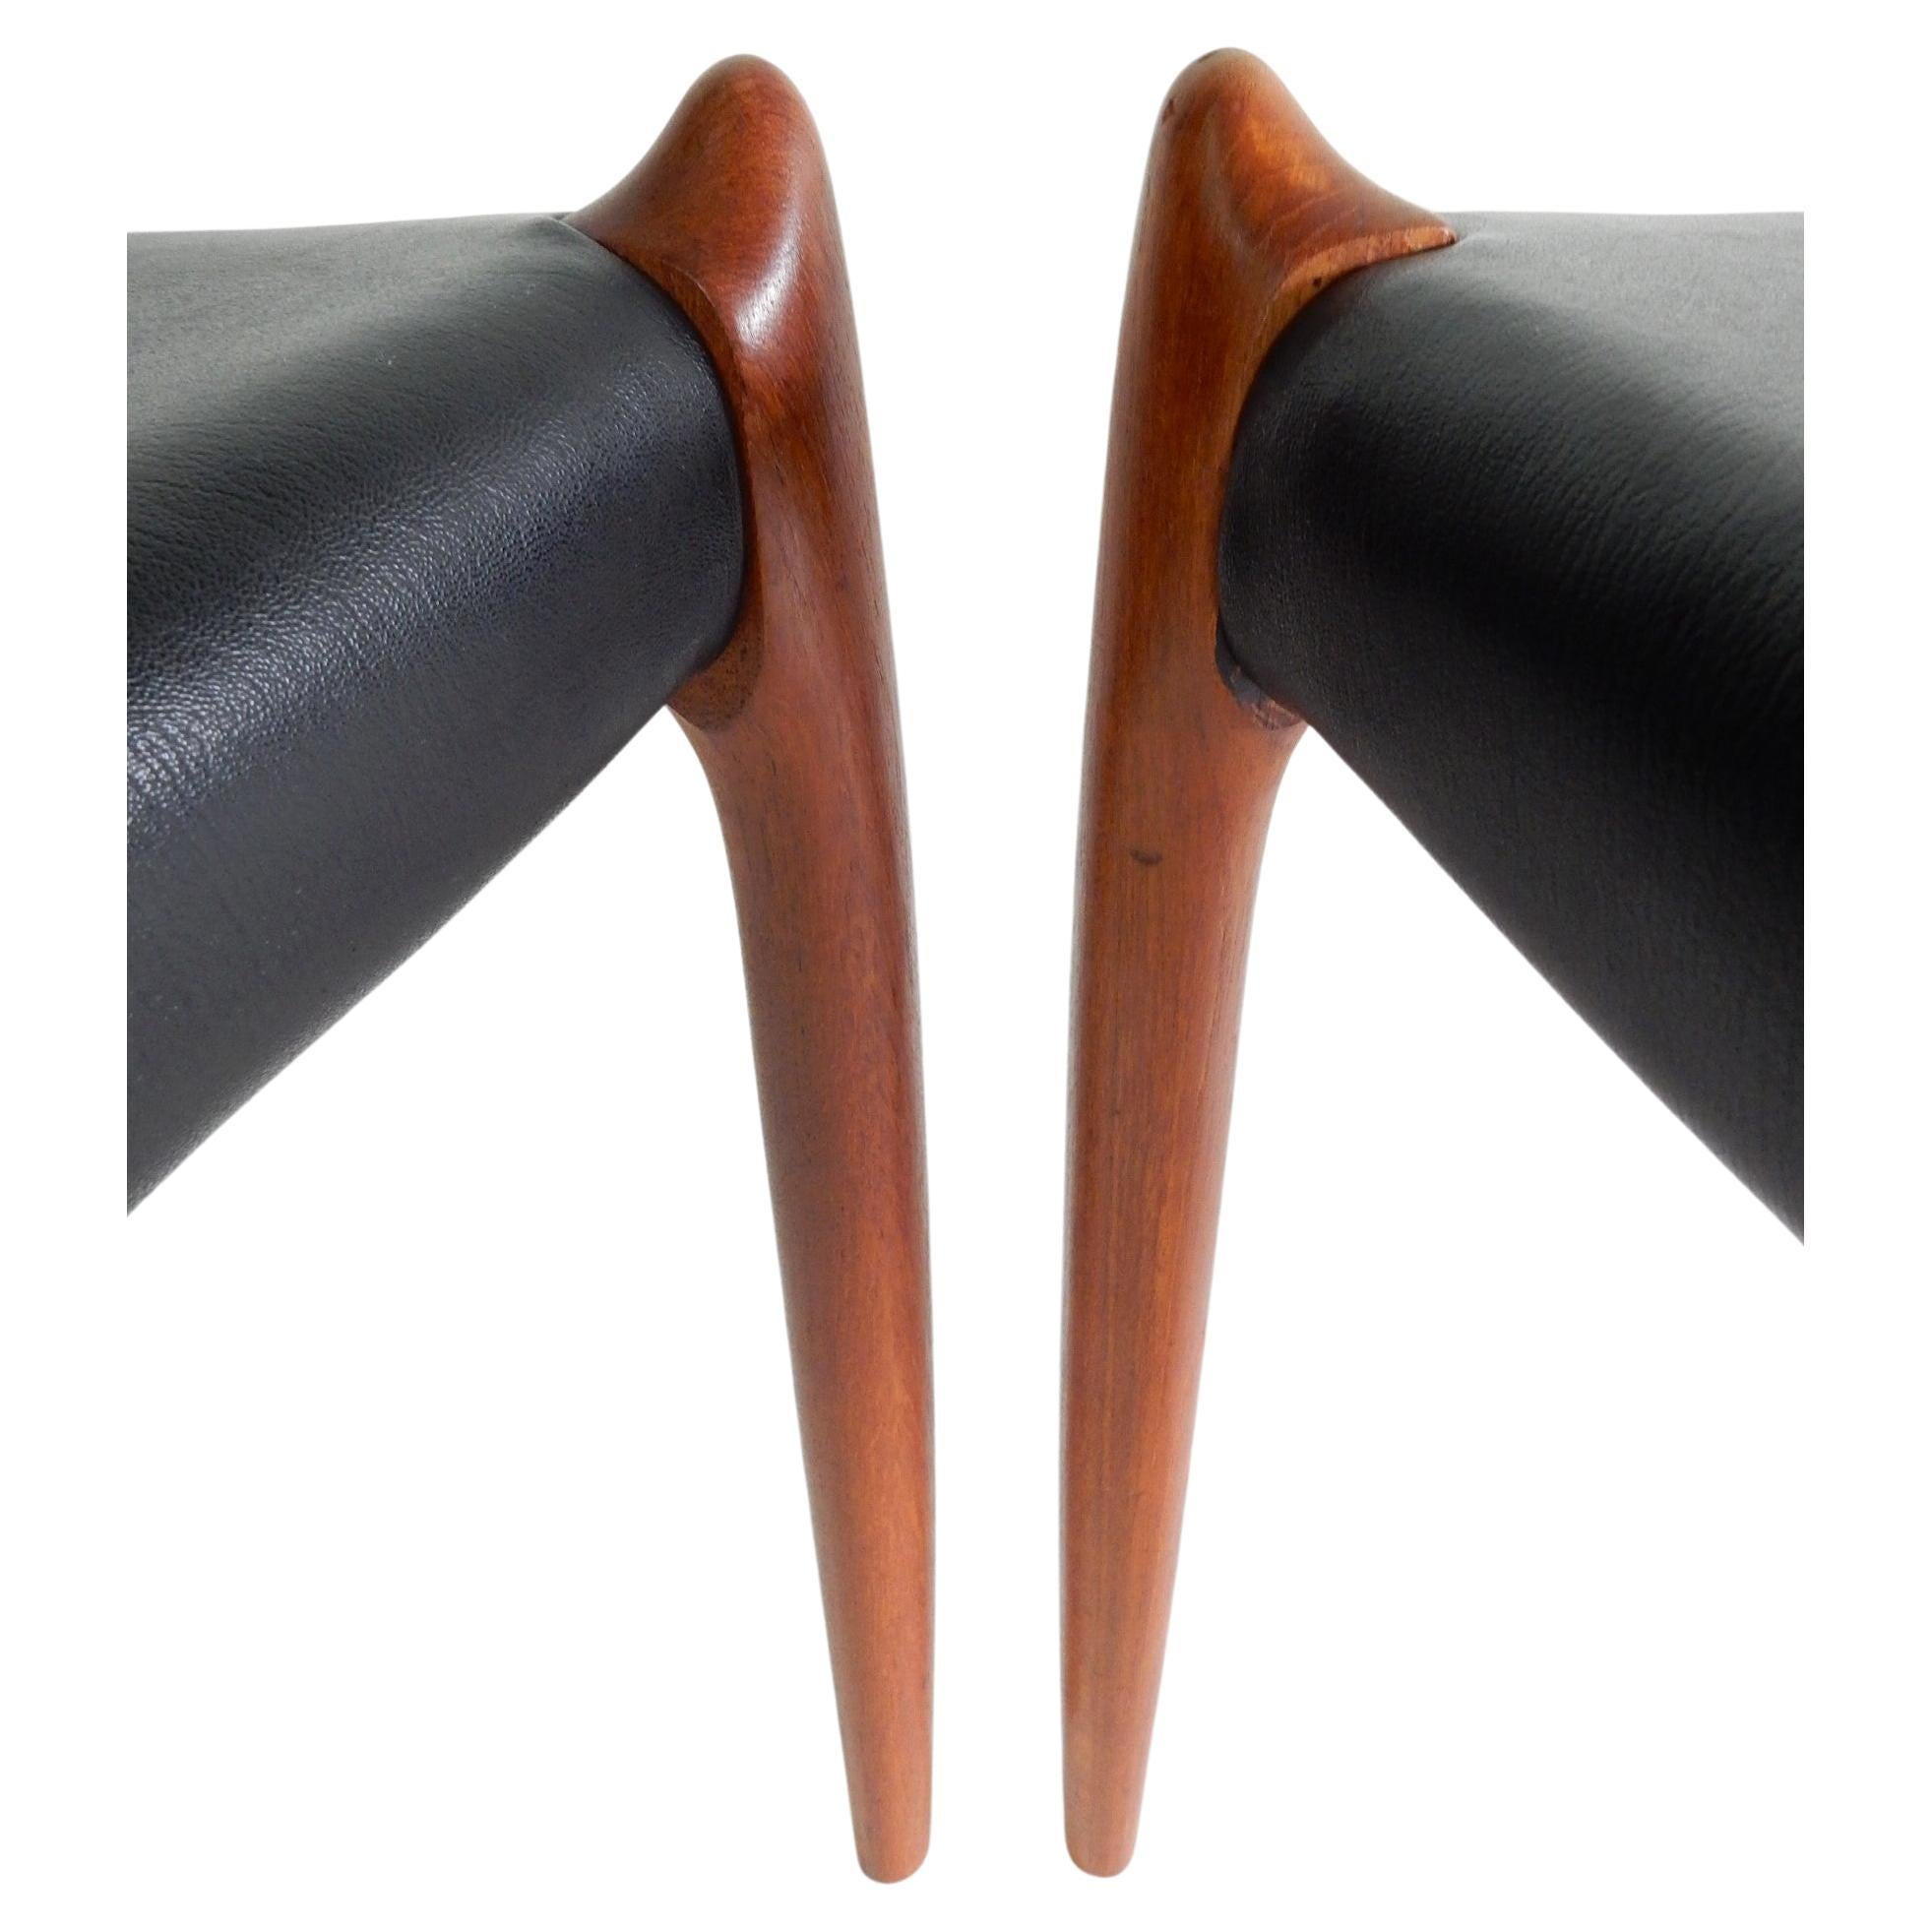 Fabelhaftes Paar Niels O. Møller Design Modell 78 Esszimmerstühle mit geschnitztem Teakholzrahmen und schön geschwungener Rückenlehne. Original schwarze Ledersitze.
Beide signiert auf der Unterseite des Rahmens, wie abgebildet. Gereinigt und bereit